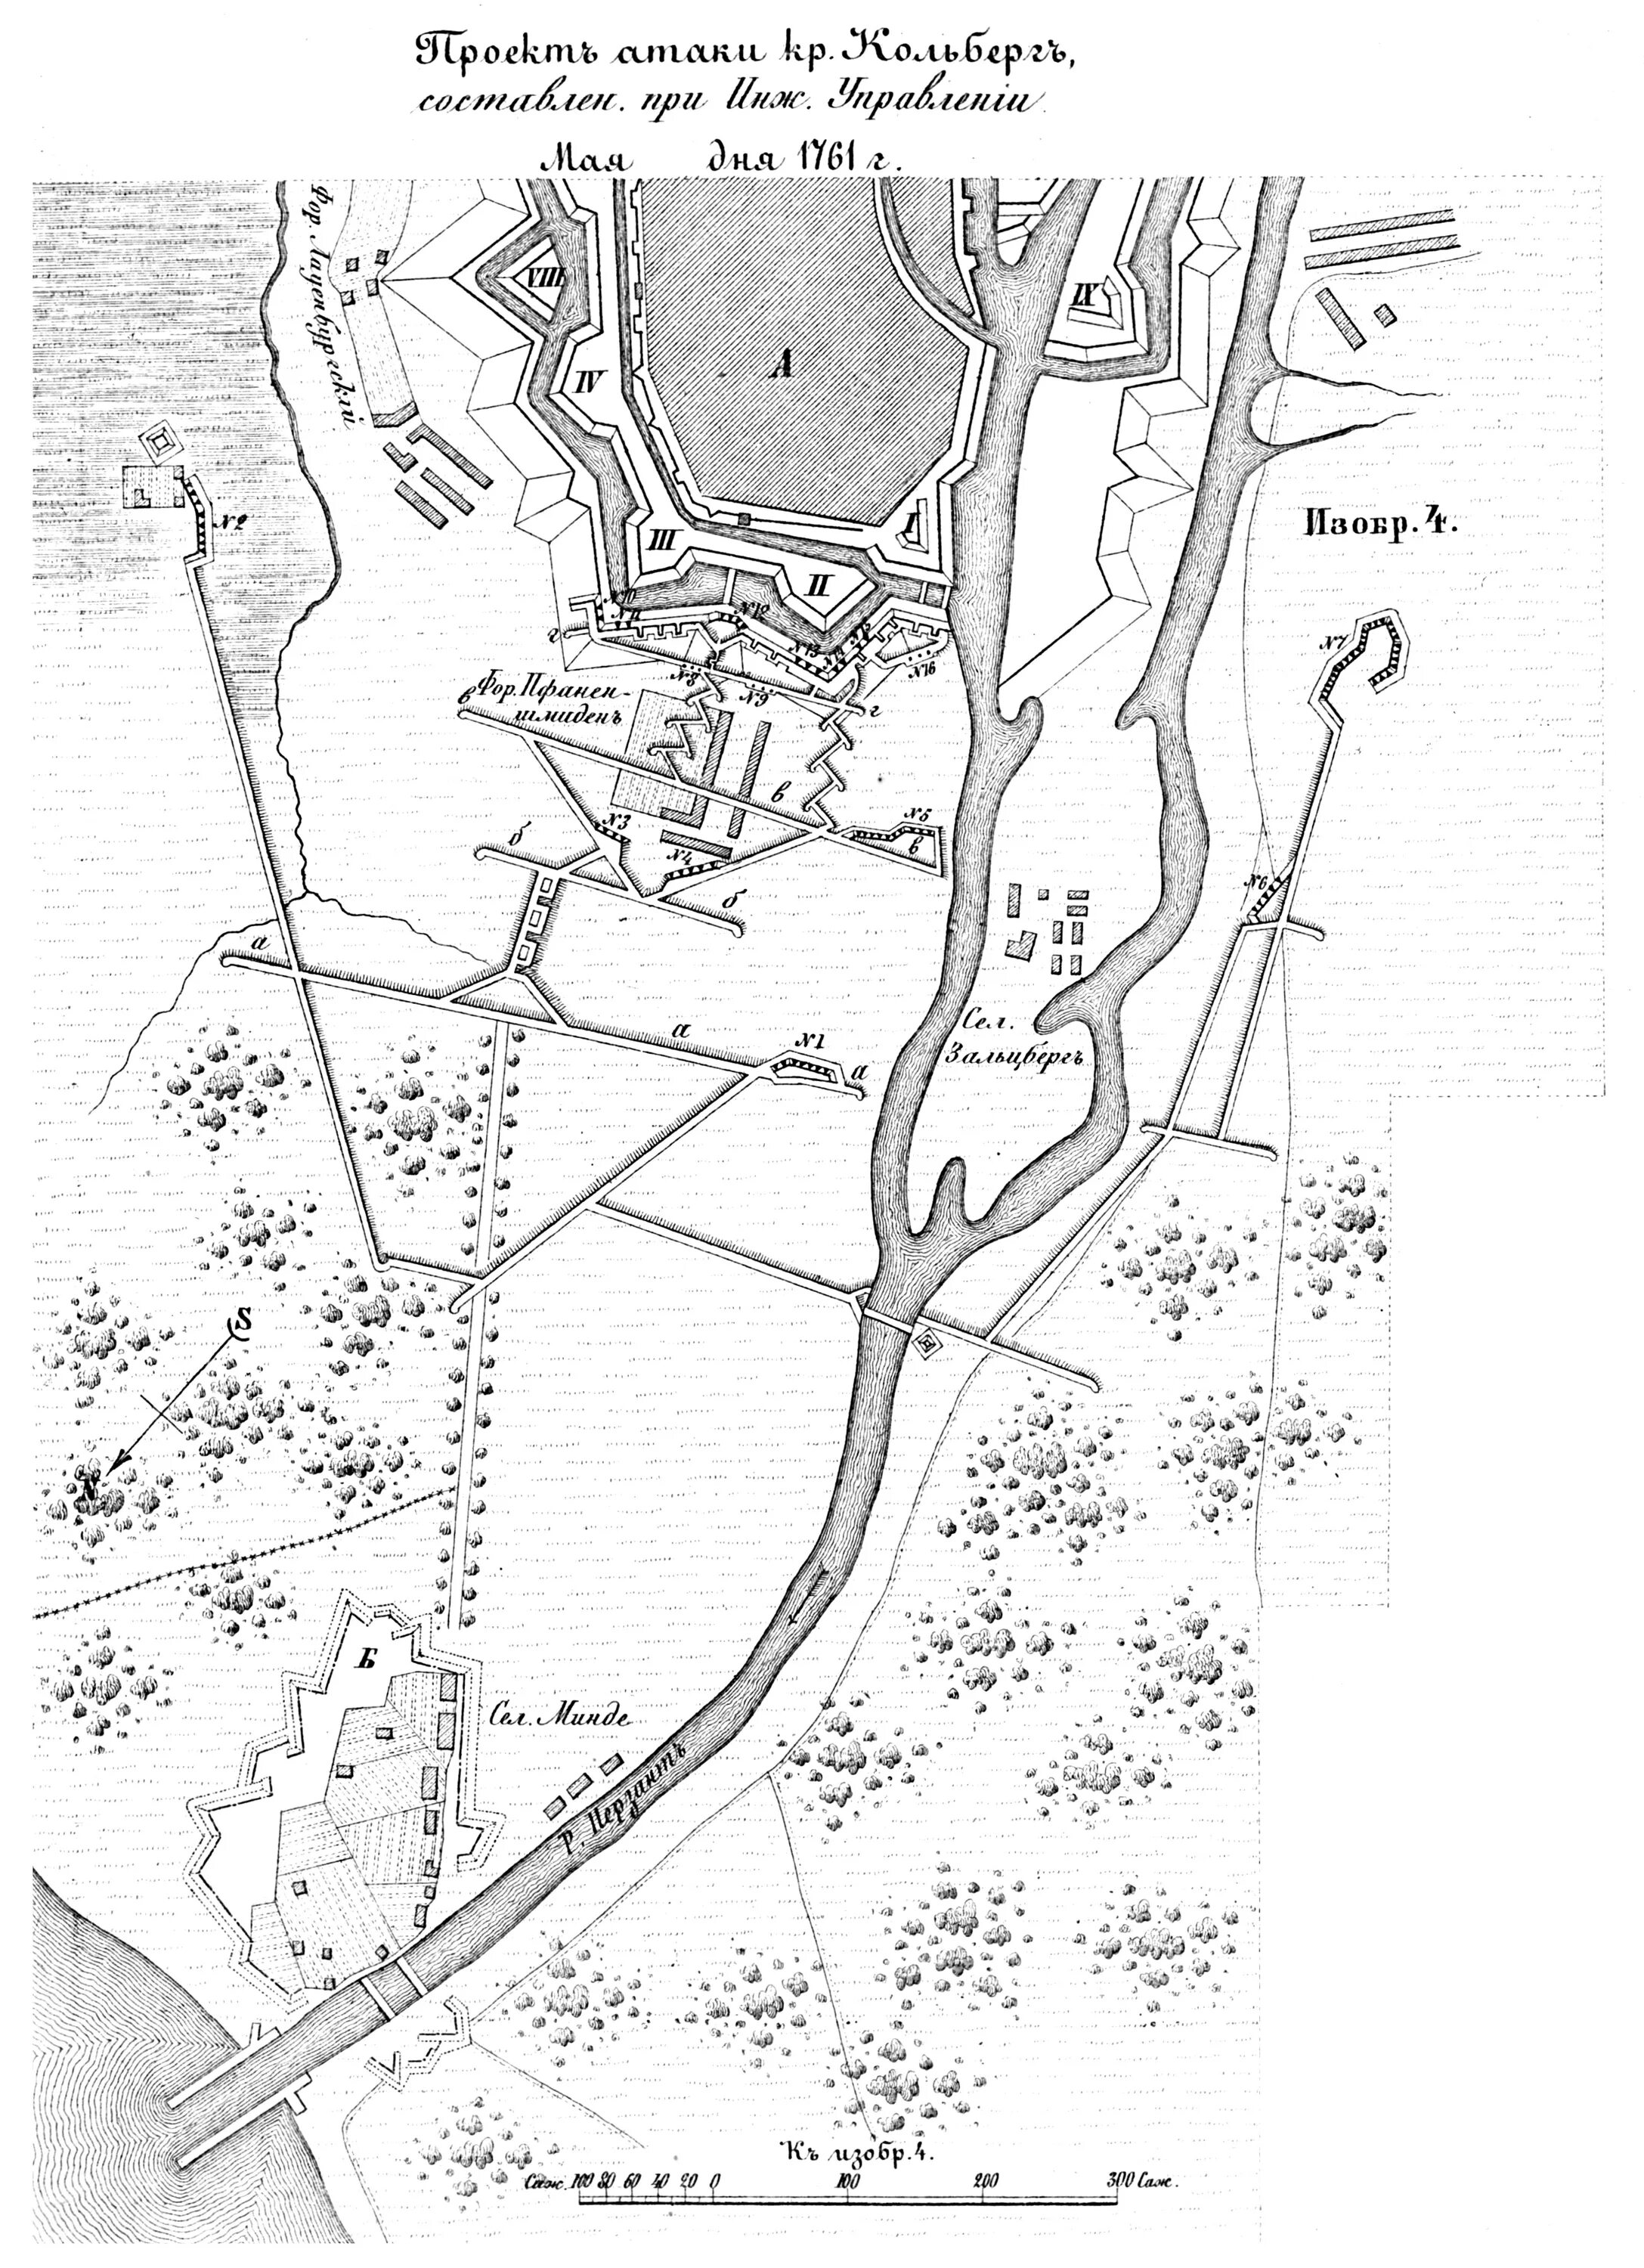 Взятие Кольберга 1761. Крепость Кольберг 1761. Взятие Кольберга 1761 карта. Крепость Кольберг план.